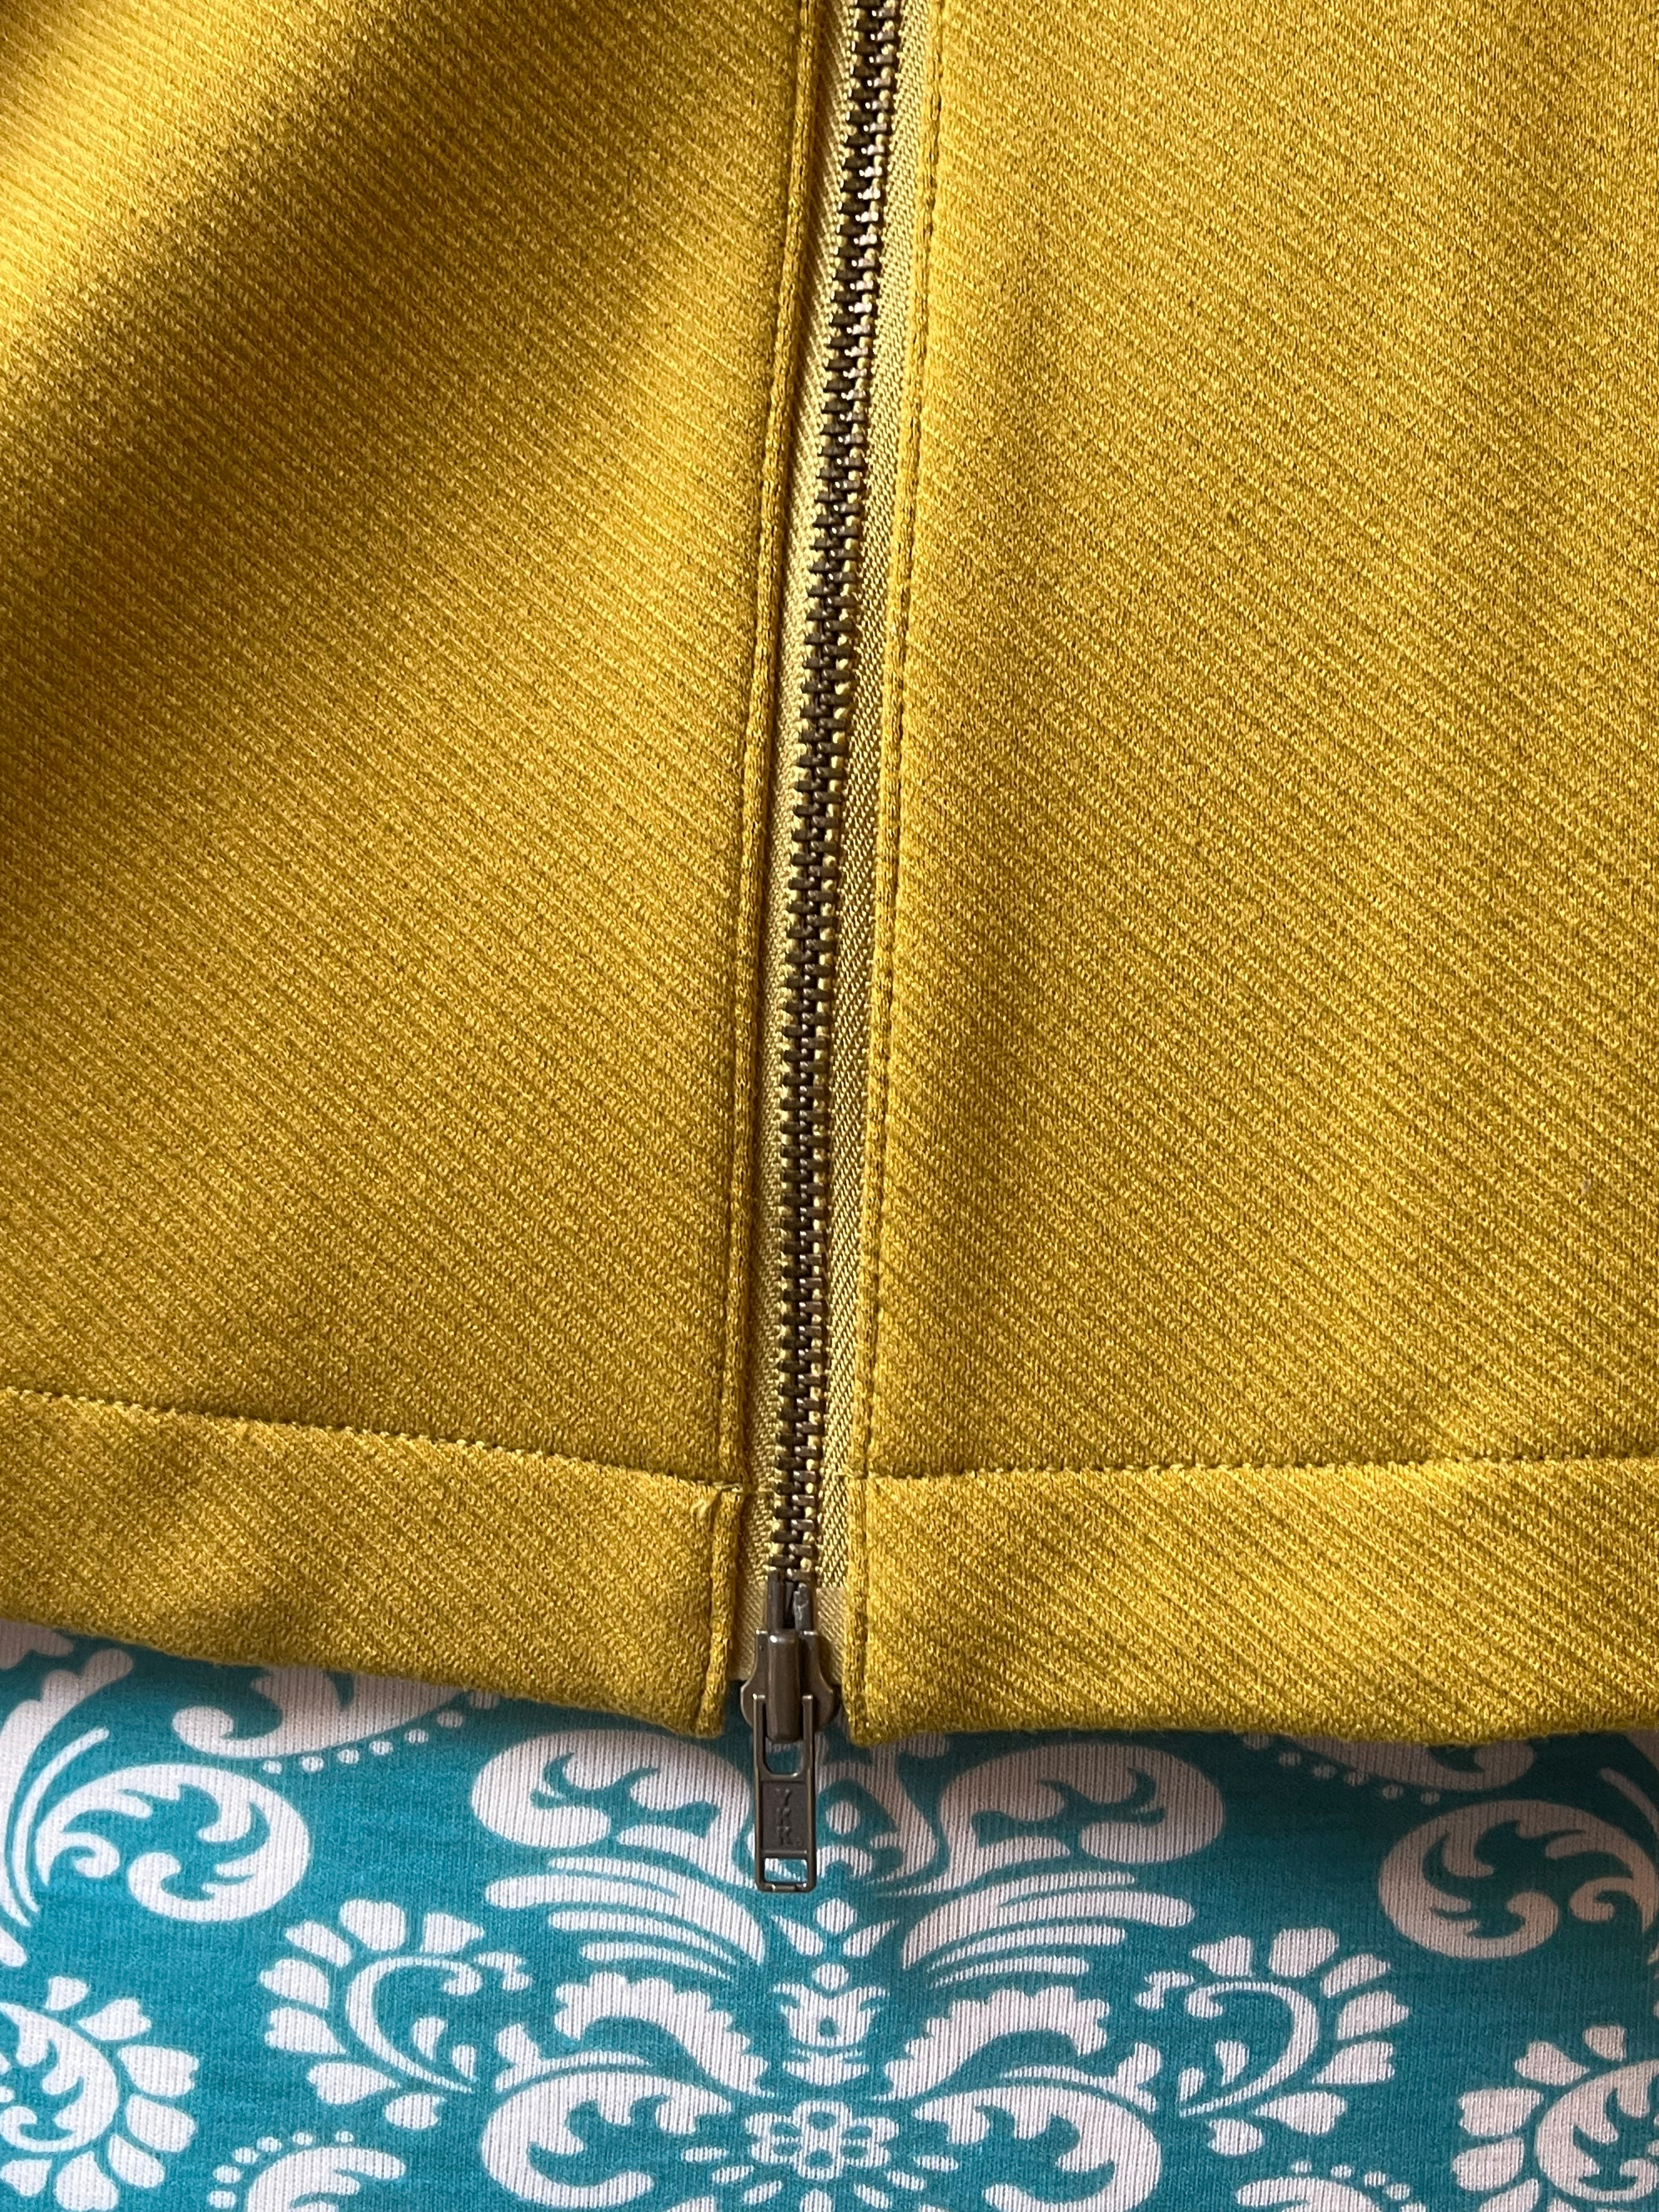 Cabi Olive Cropped Knit Zip Up Jacket, Size: Medium